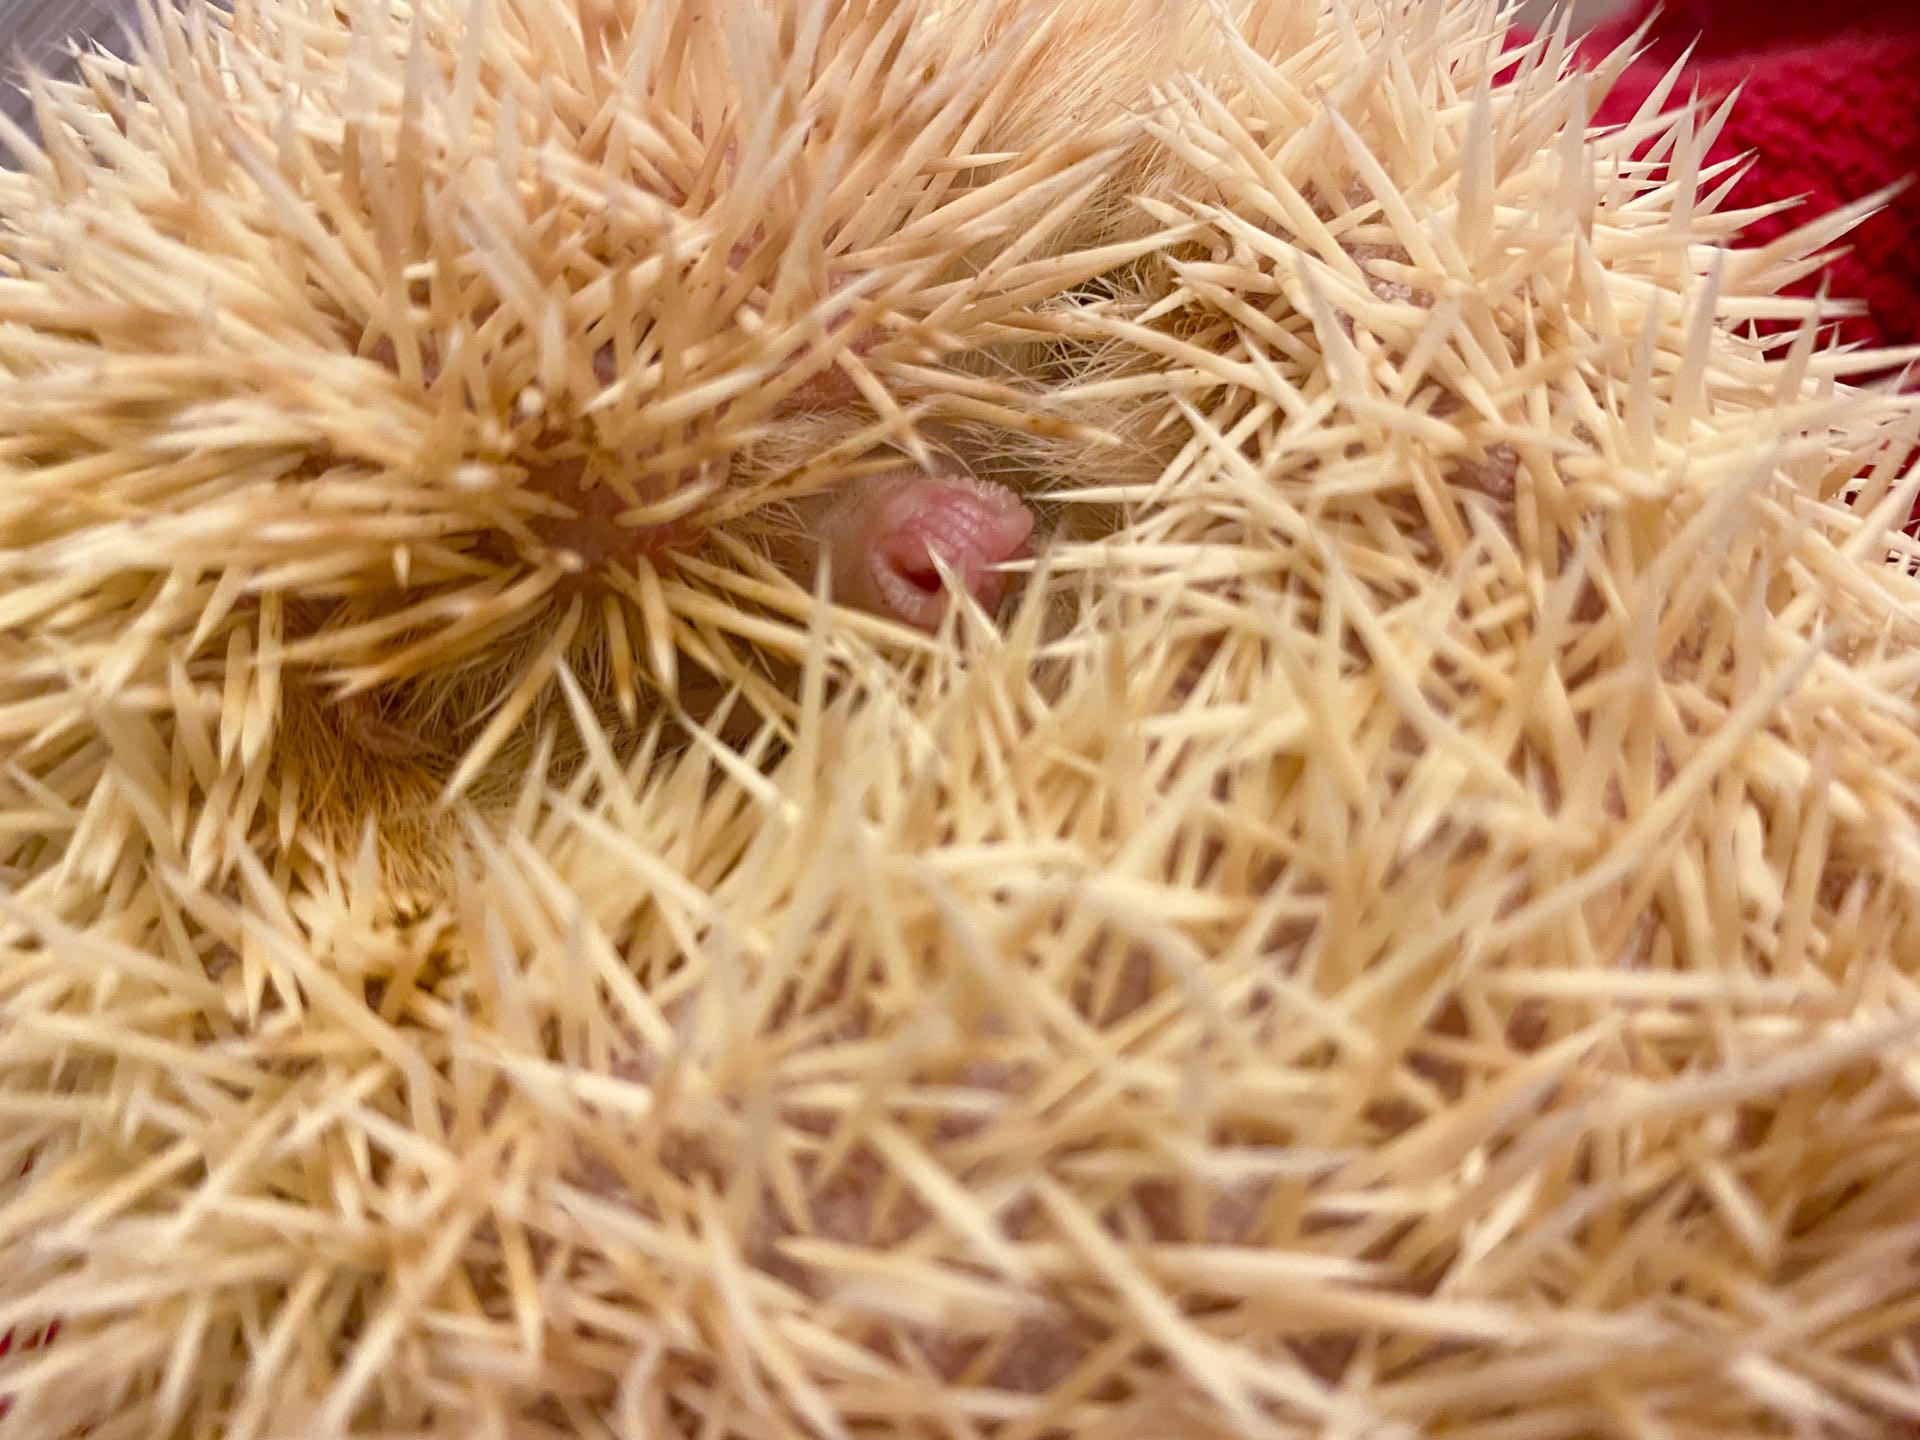 african pygmy hedgehog